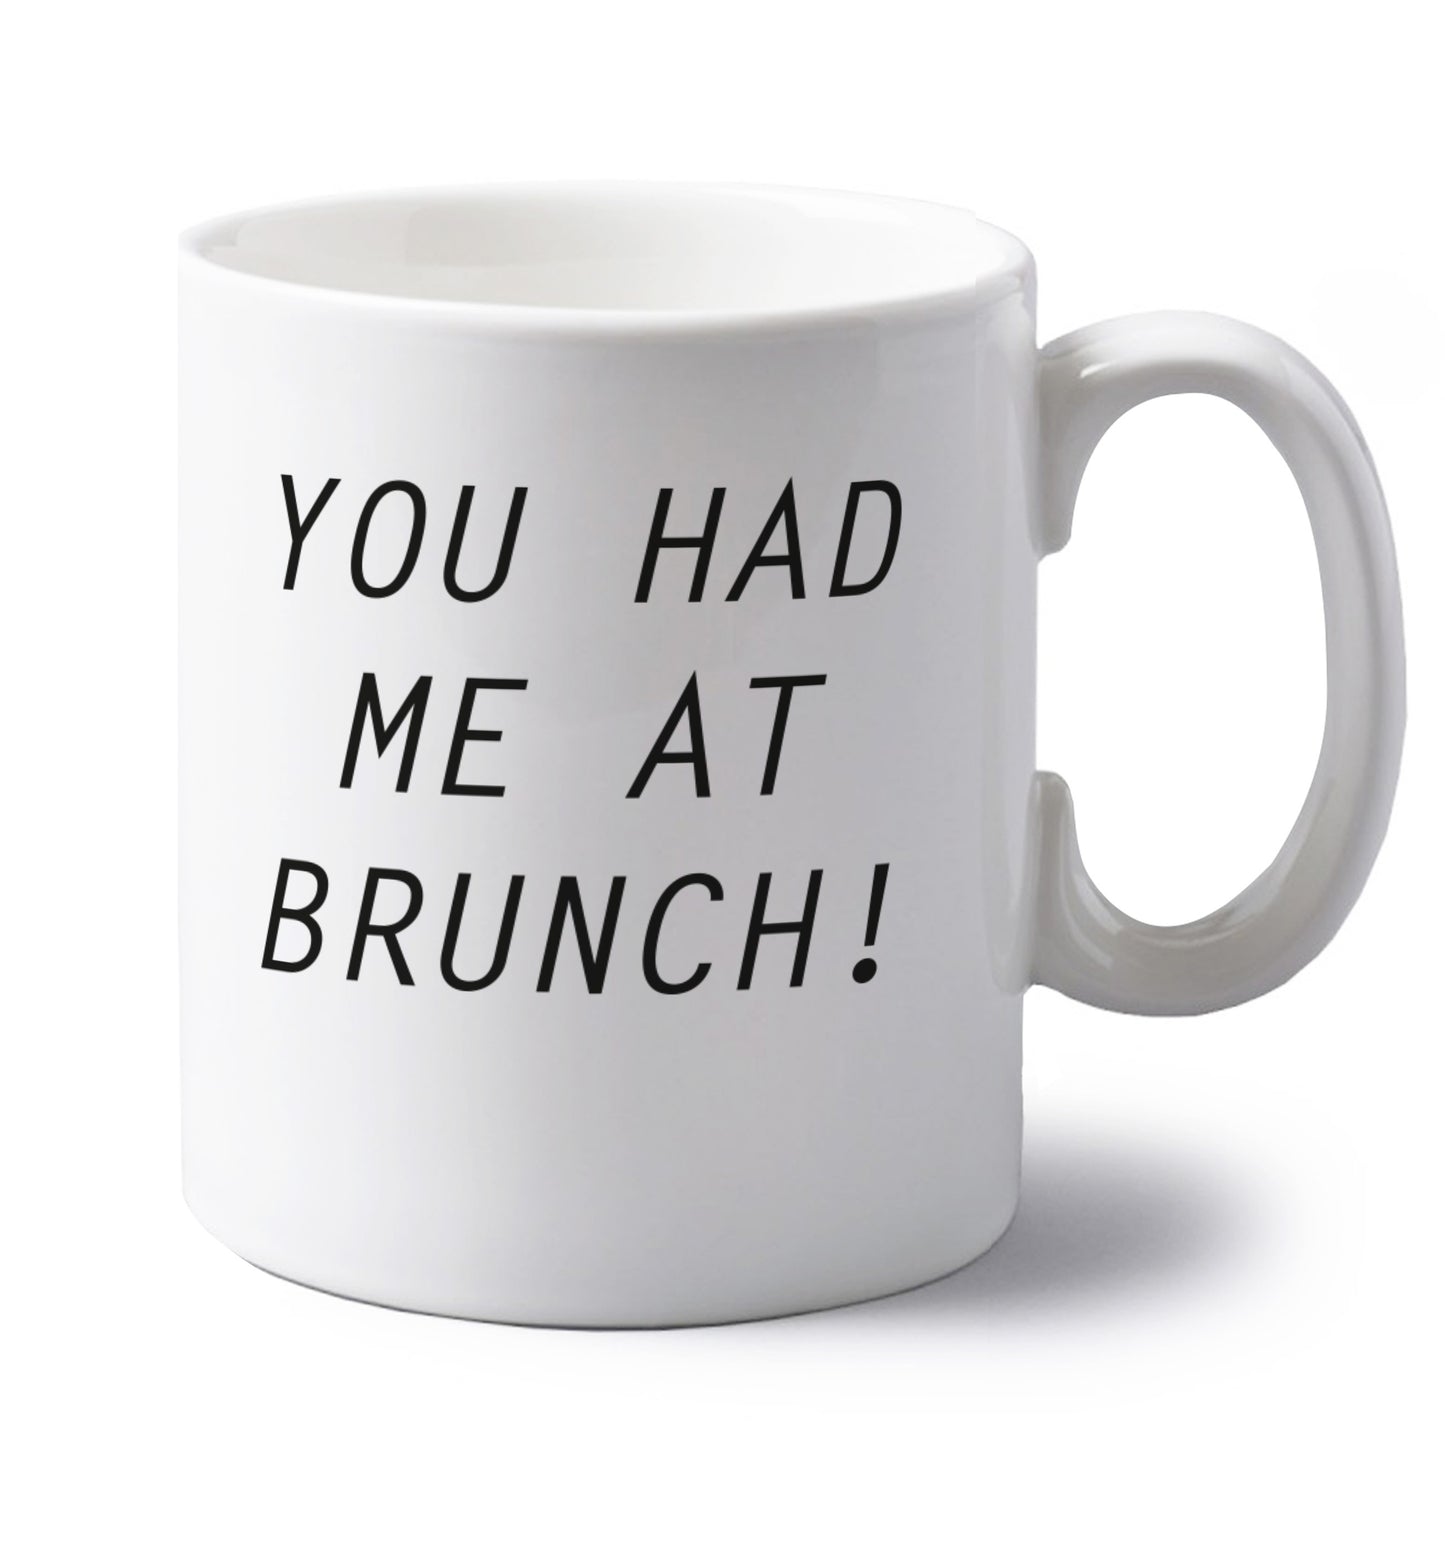 You had me at brunch left handed white ceramic mug 